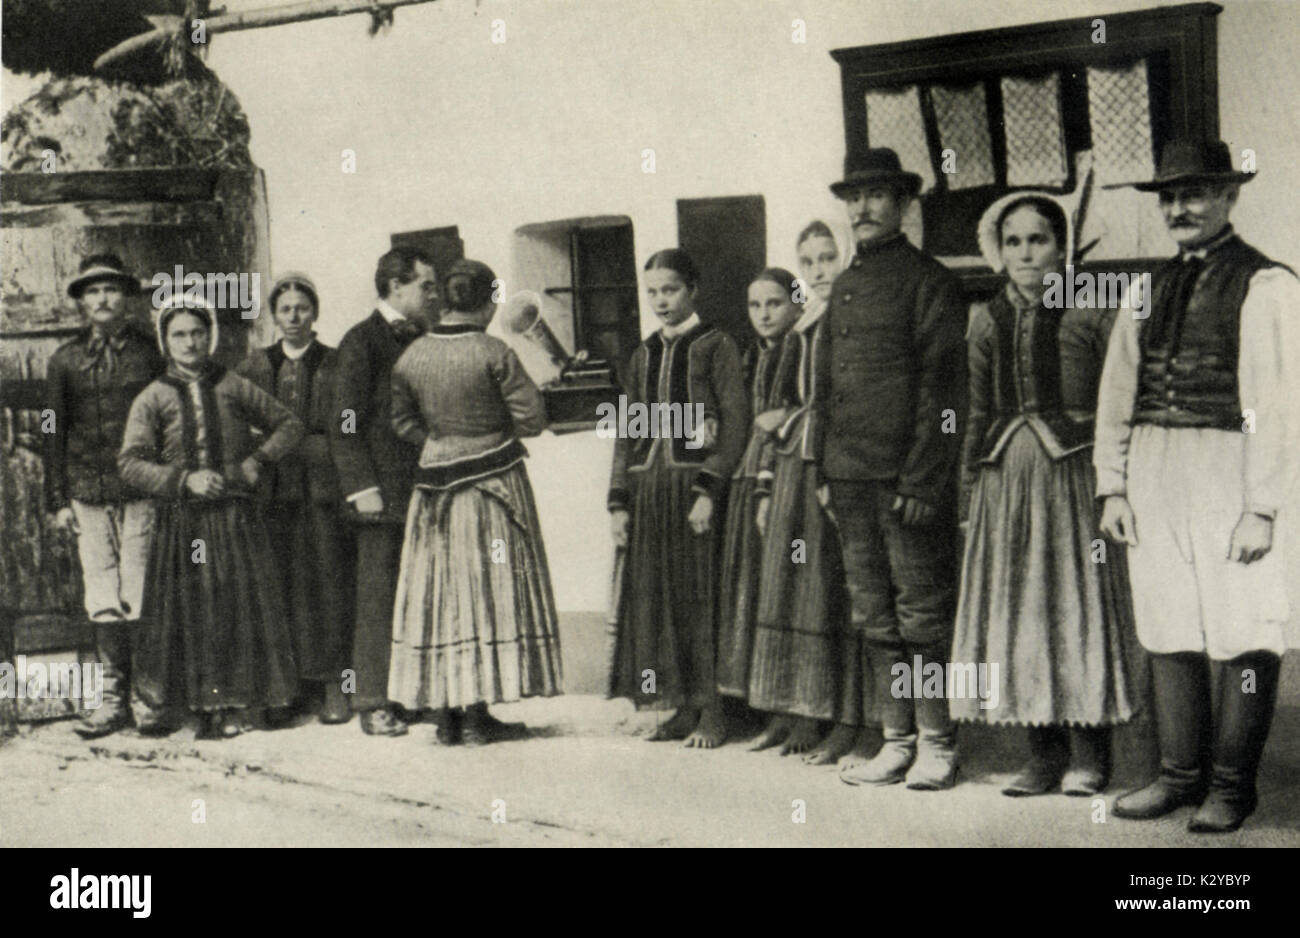 Bela Bartok la collecte de chants populaires Slovaques en 1907, village d'Zobordarazs dans le comté de Nyitra Drazovce (aujourd'hui, la République tchèque), faire l'enregistrement. Pianiste et compositeur hongrois, 1881-1945 Banque D'Images